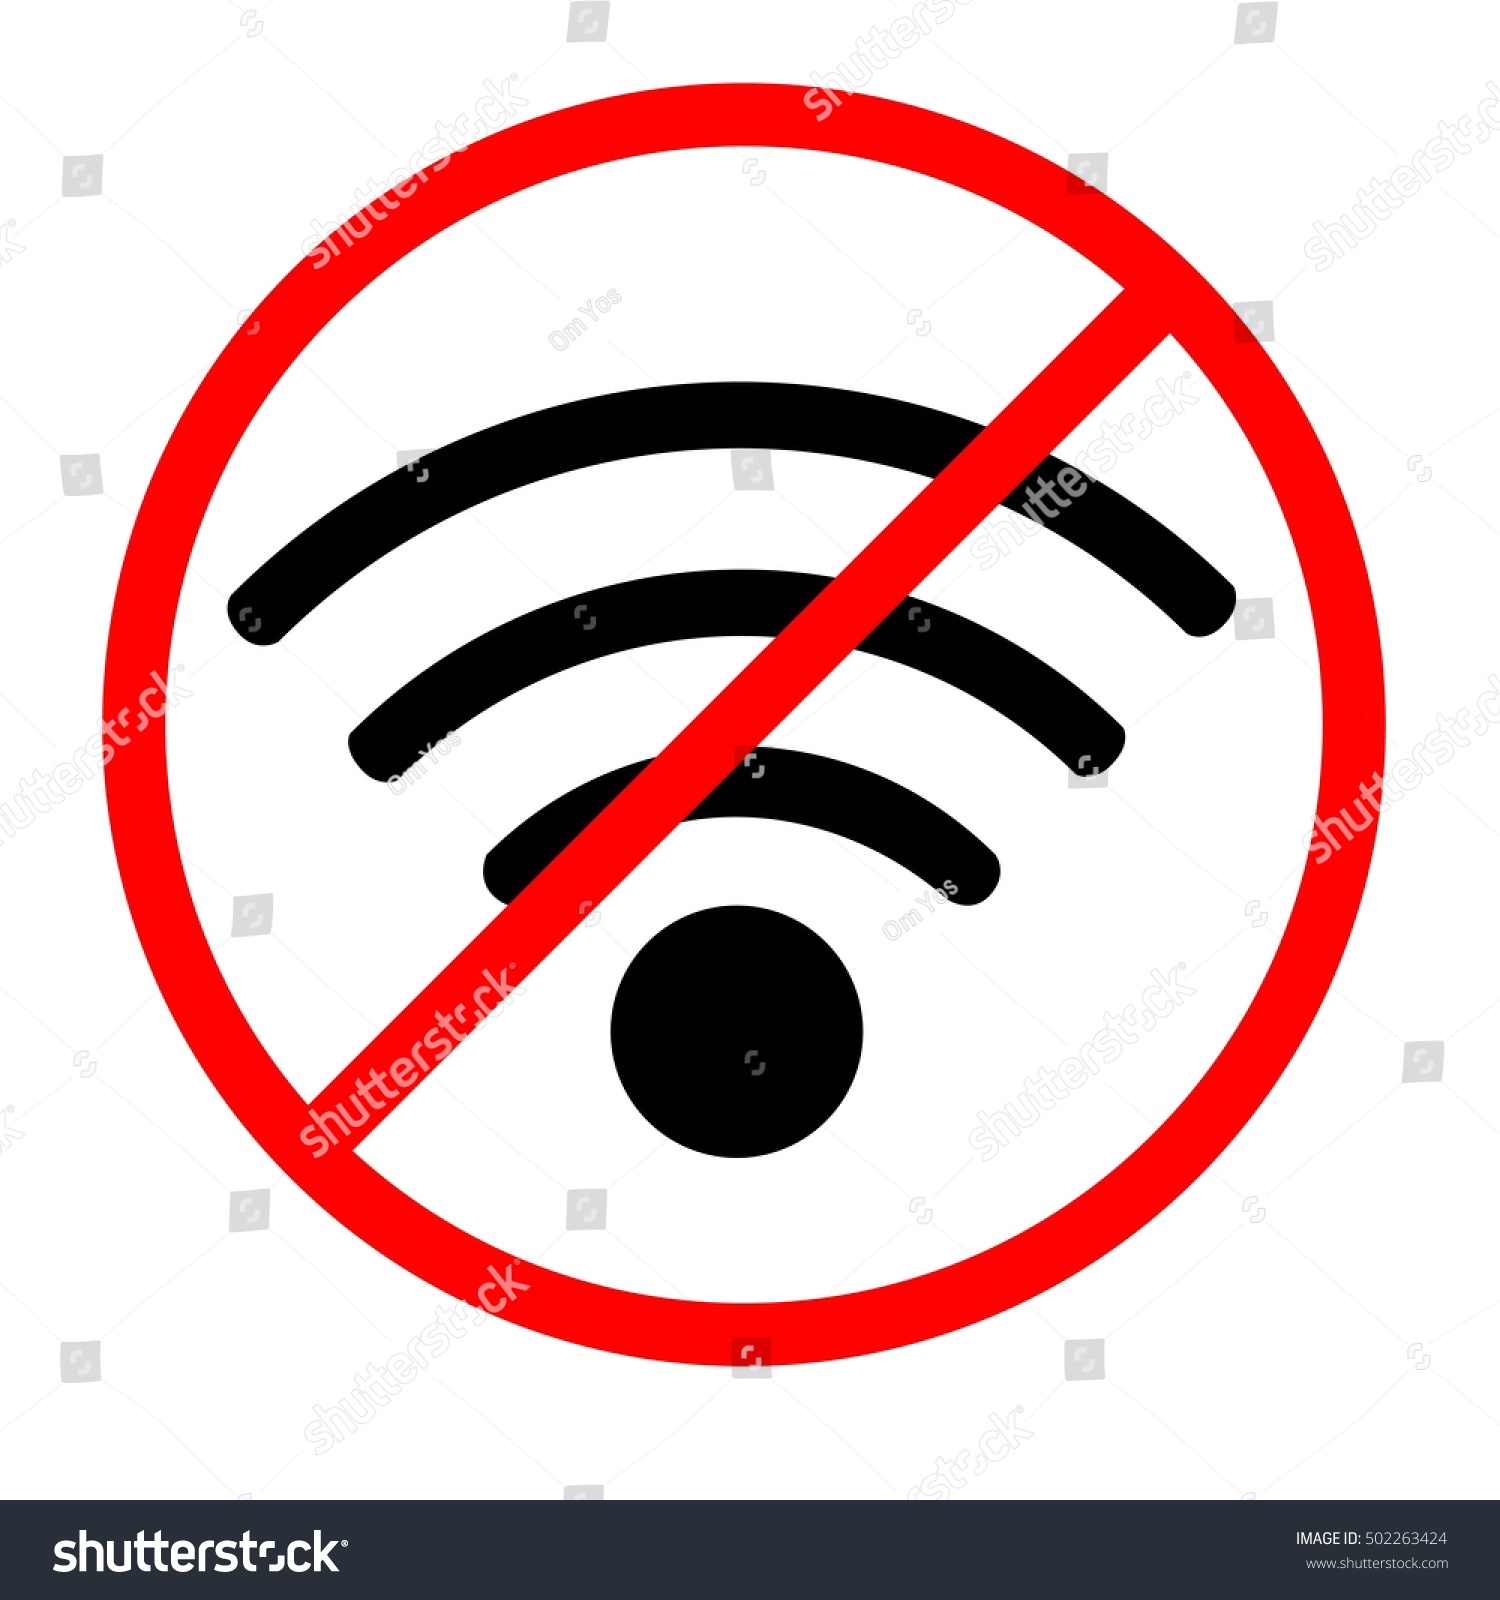 Lenen Leninisme Doorlaatbaarheid Label Sticker Sign No Internet Connection Stock Vector (Royalty Free)  502263424